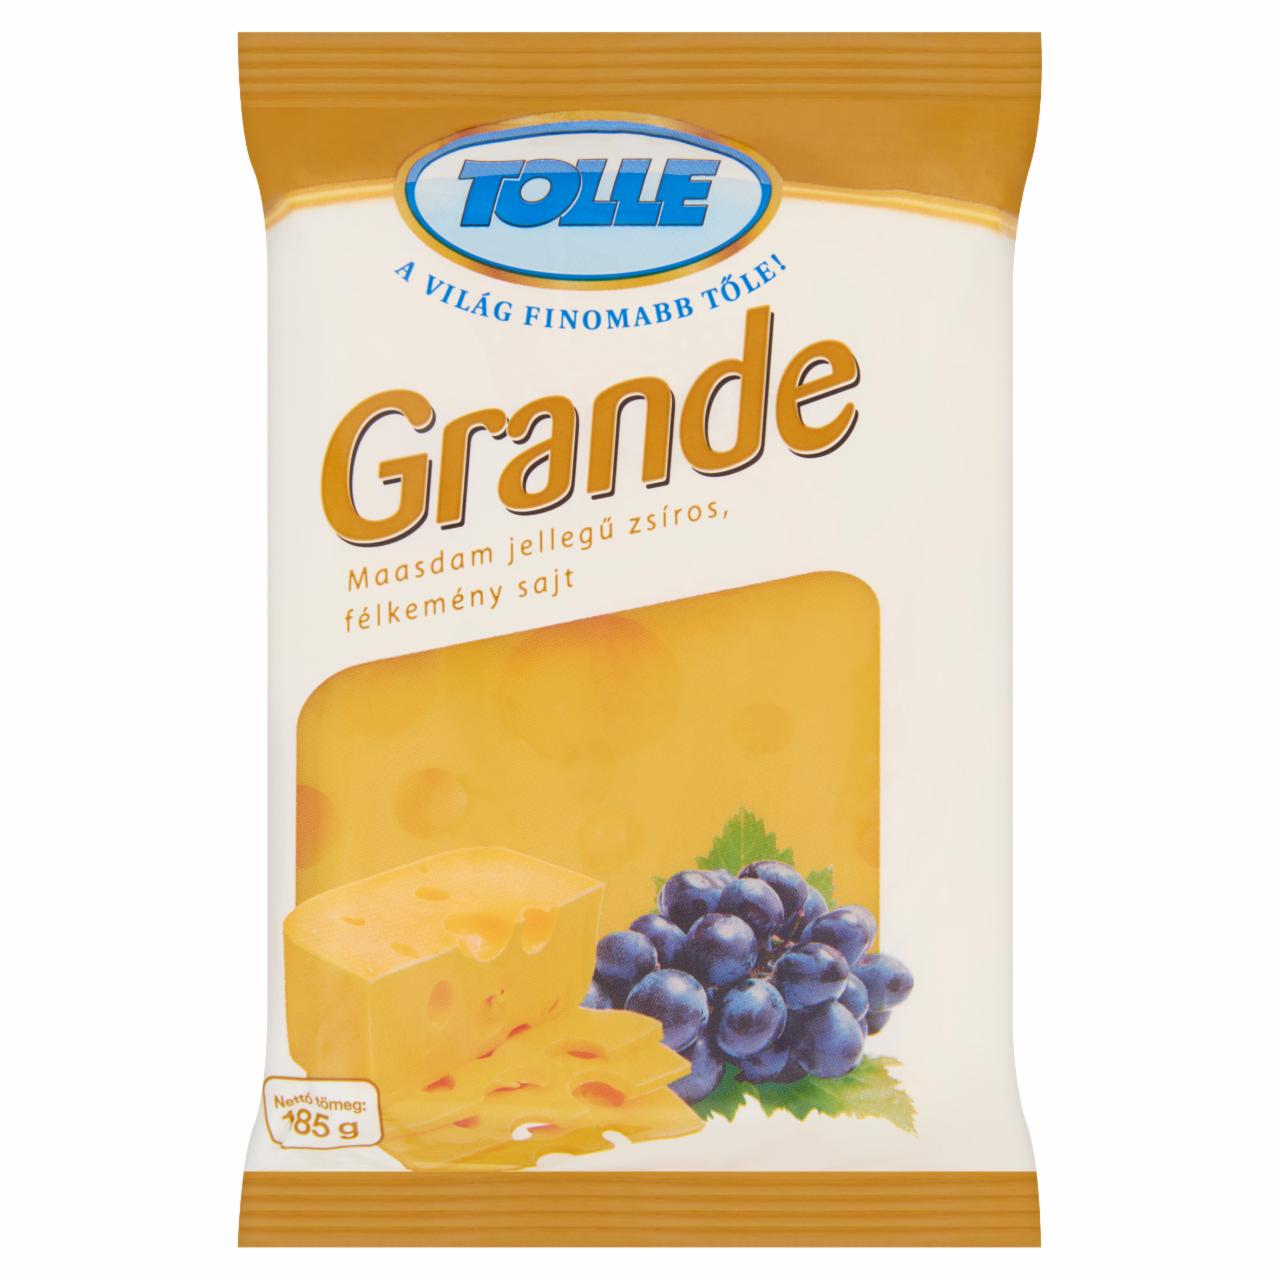 Képek - Tolle Grande szeletelt maasdam jellegű zsíros, félkemény sajt 185 g